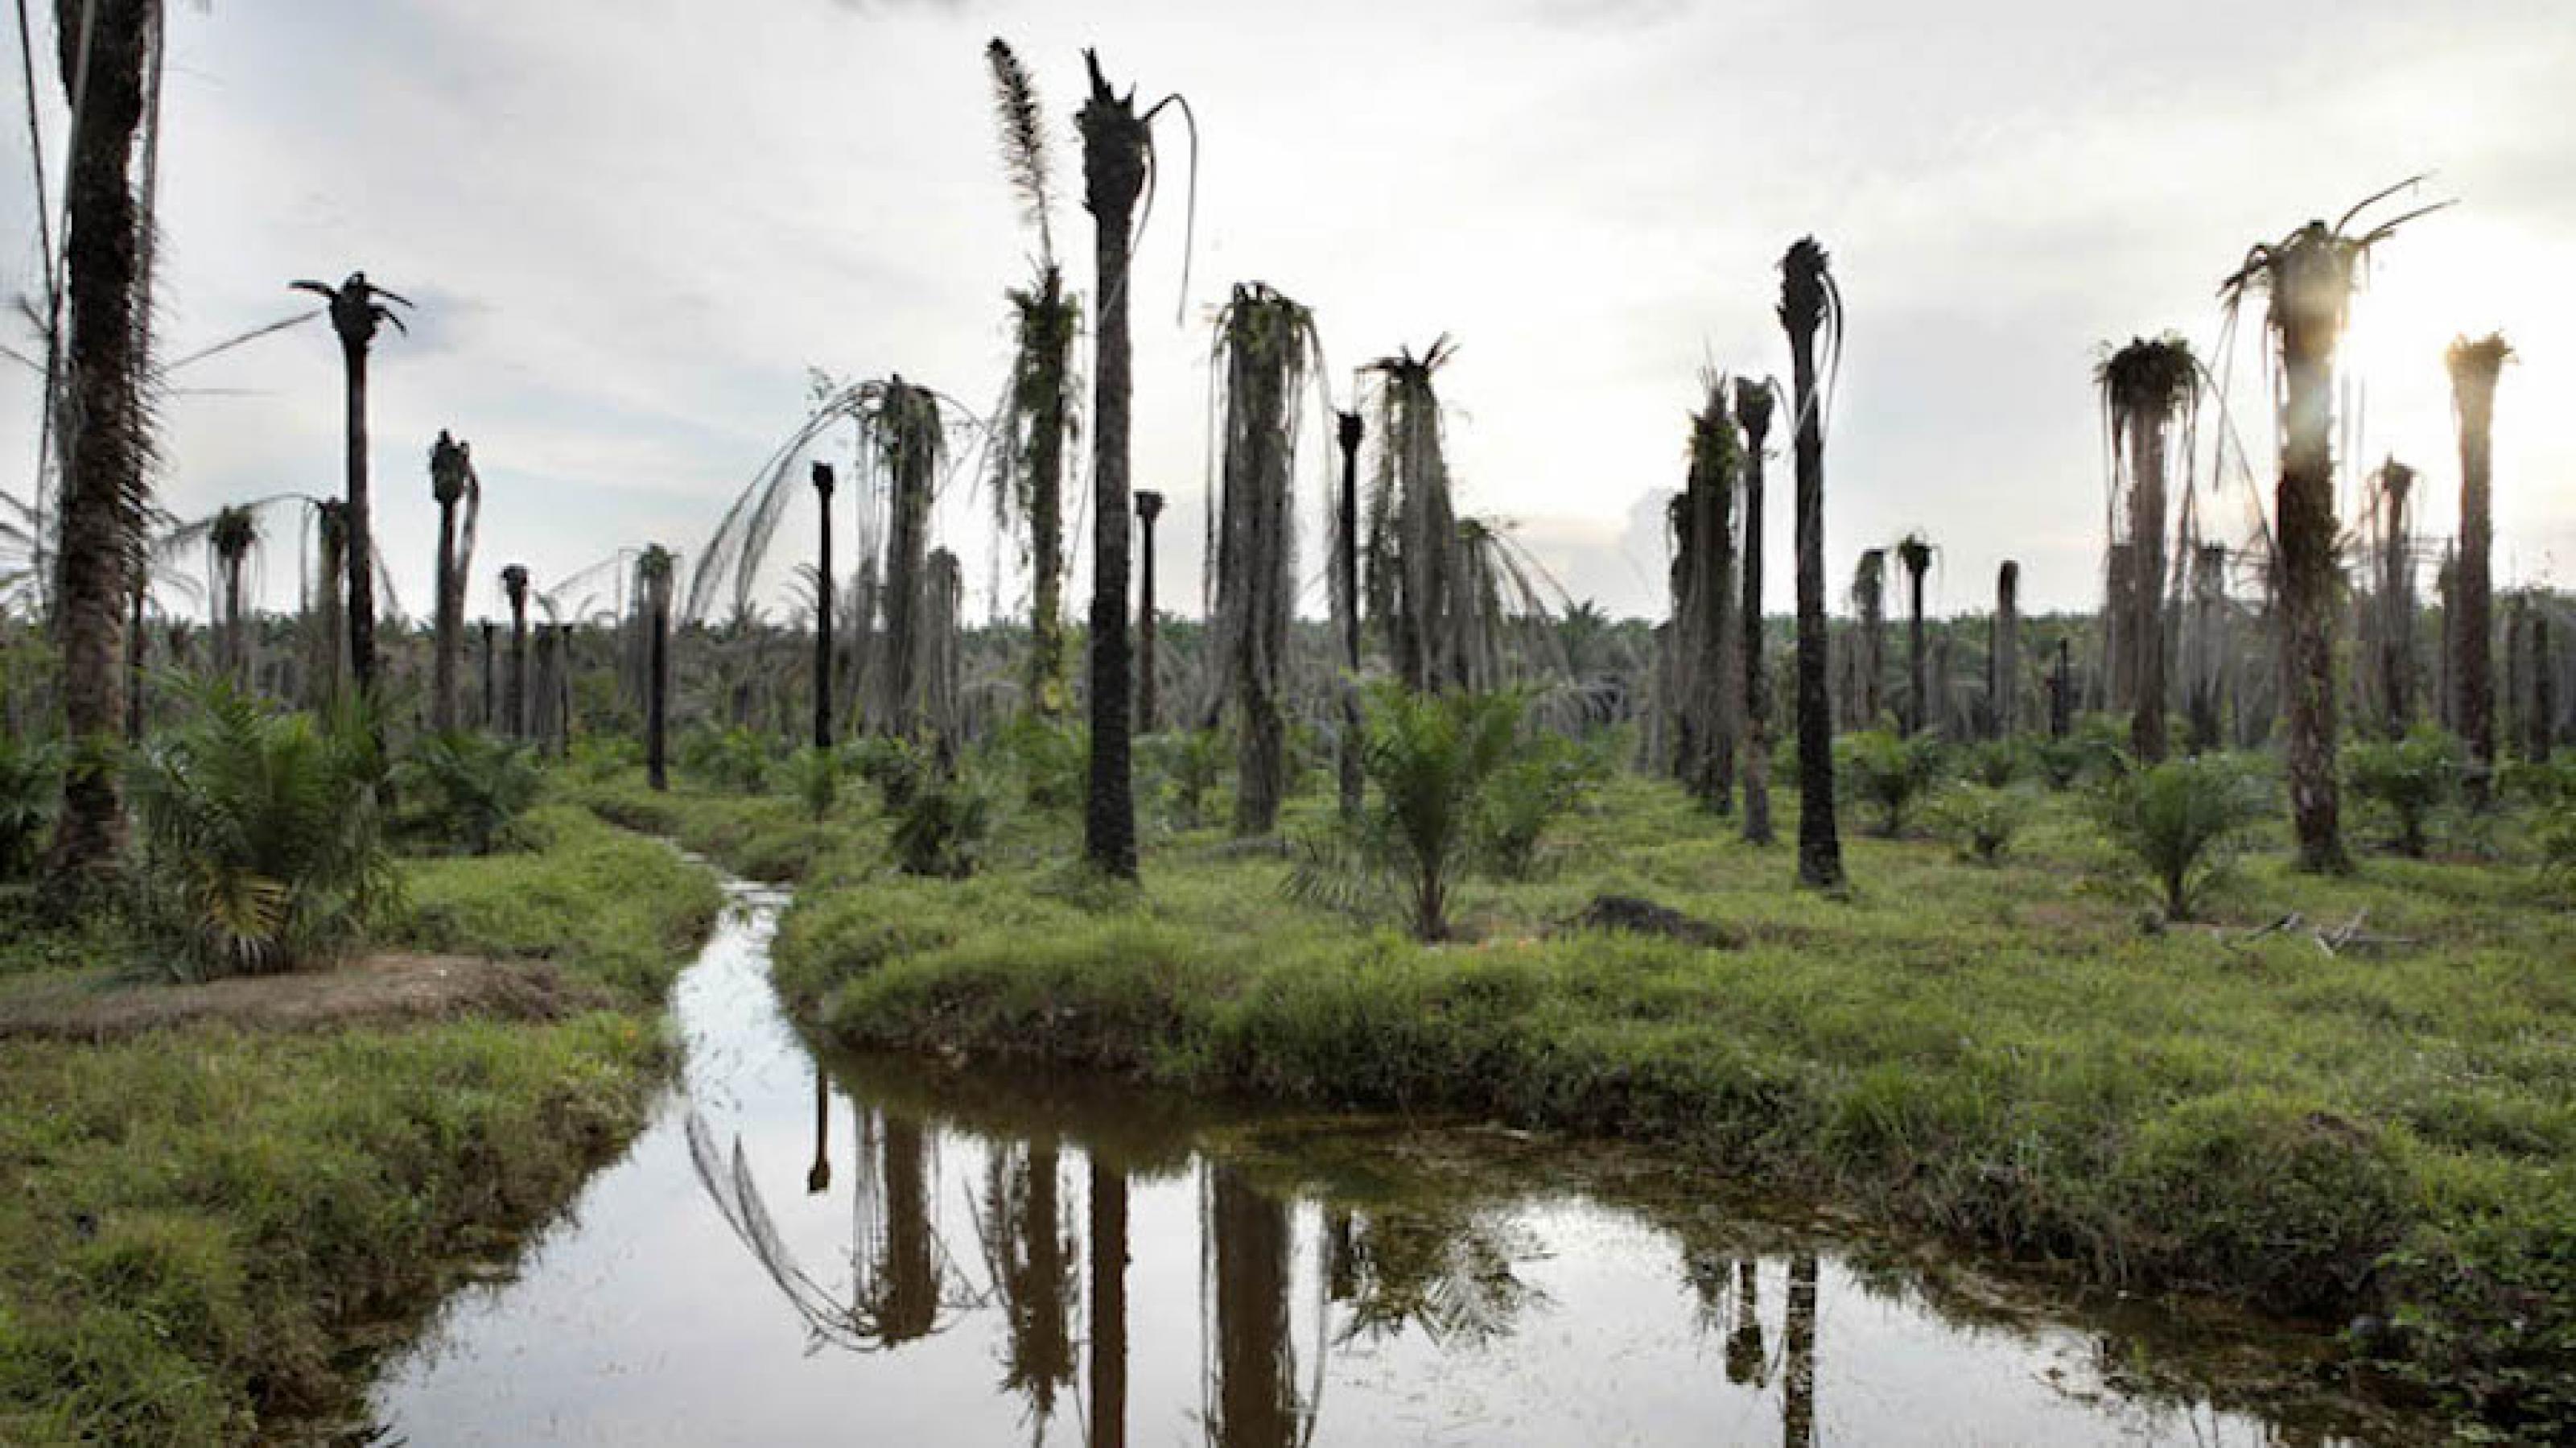 Abgestorbene Ölpalmen in einem ehemaligen Regenwaldgebiet auf Borneo, Indonesien